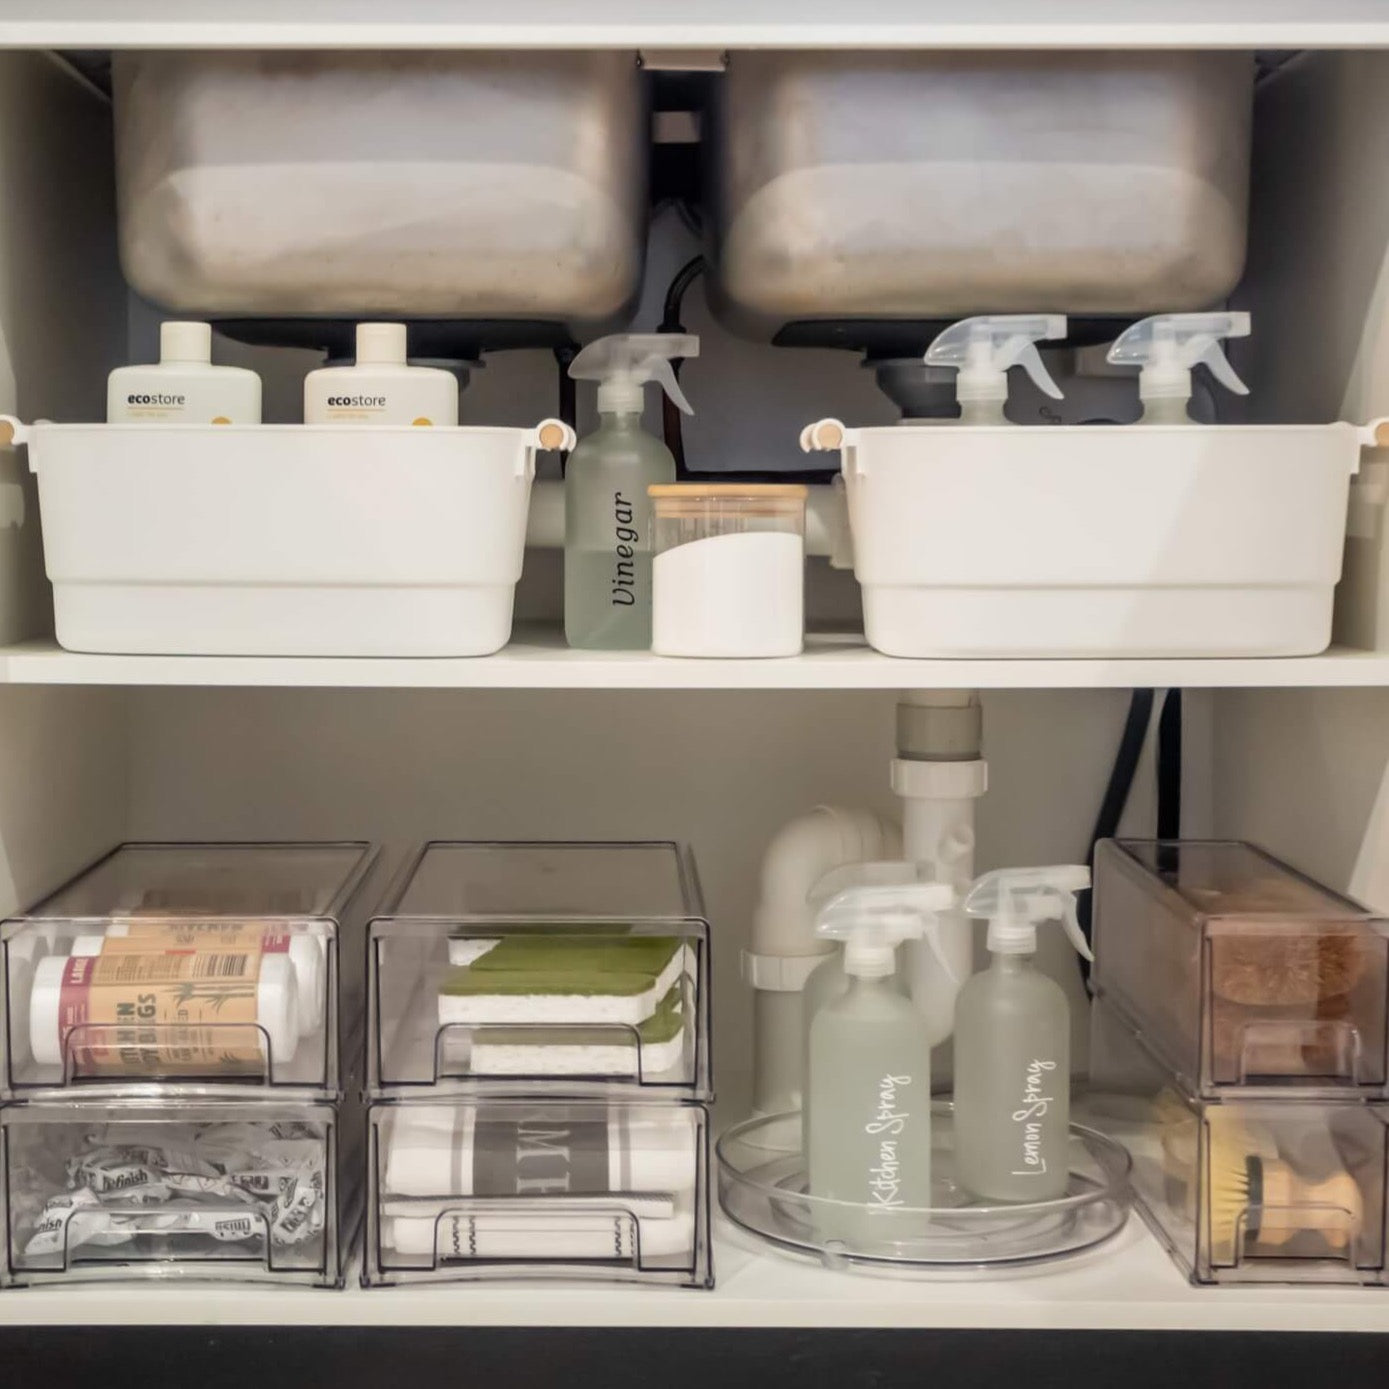 8 Steps to Improve Your Under-Sink Storage